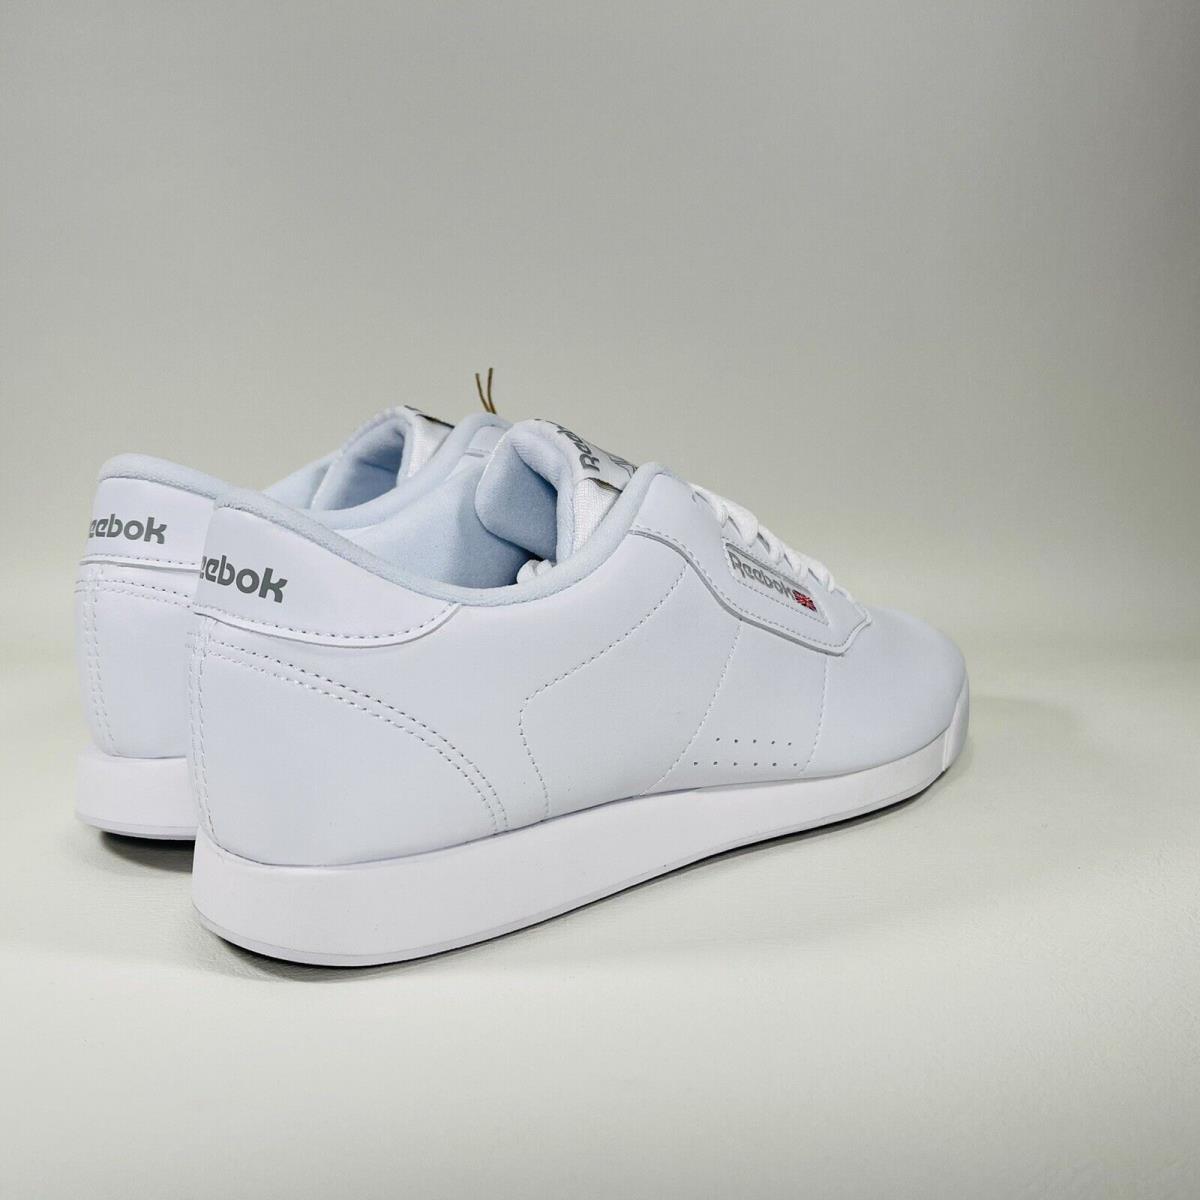 Reebok shoes Women - White 6